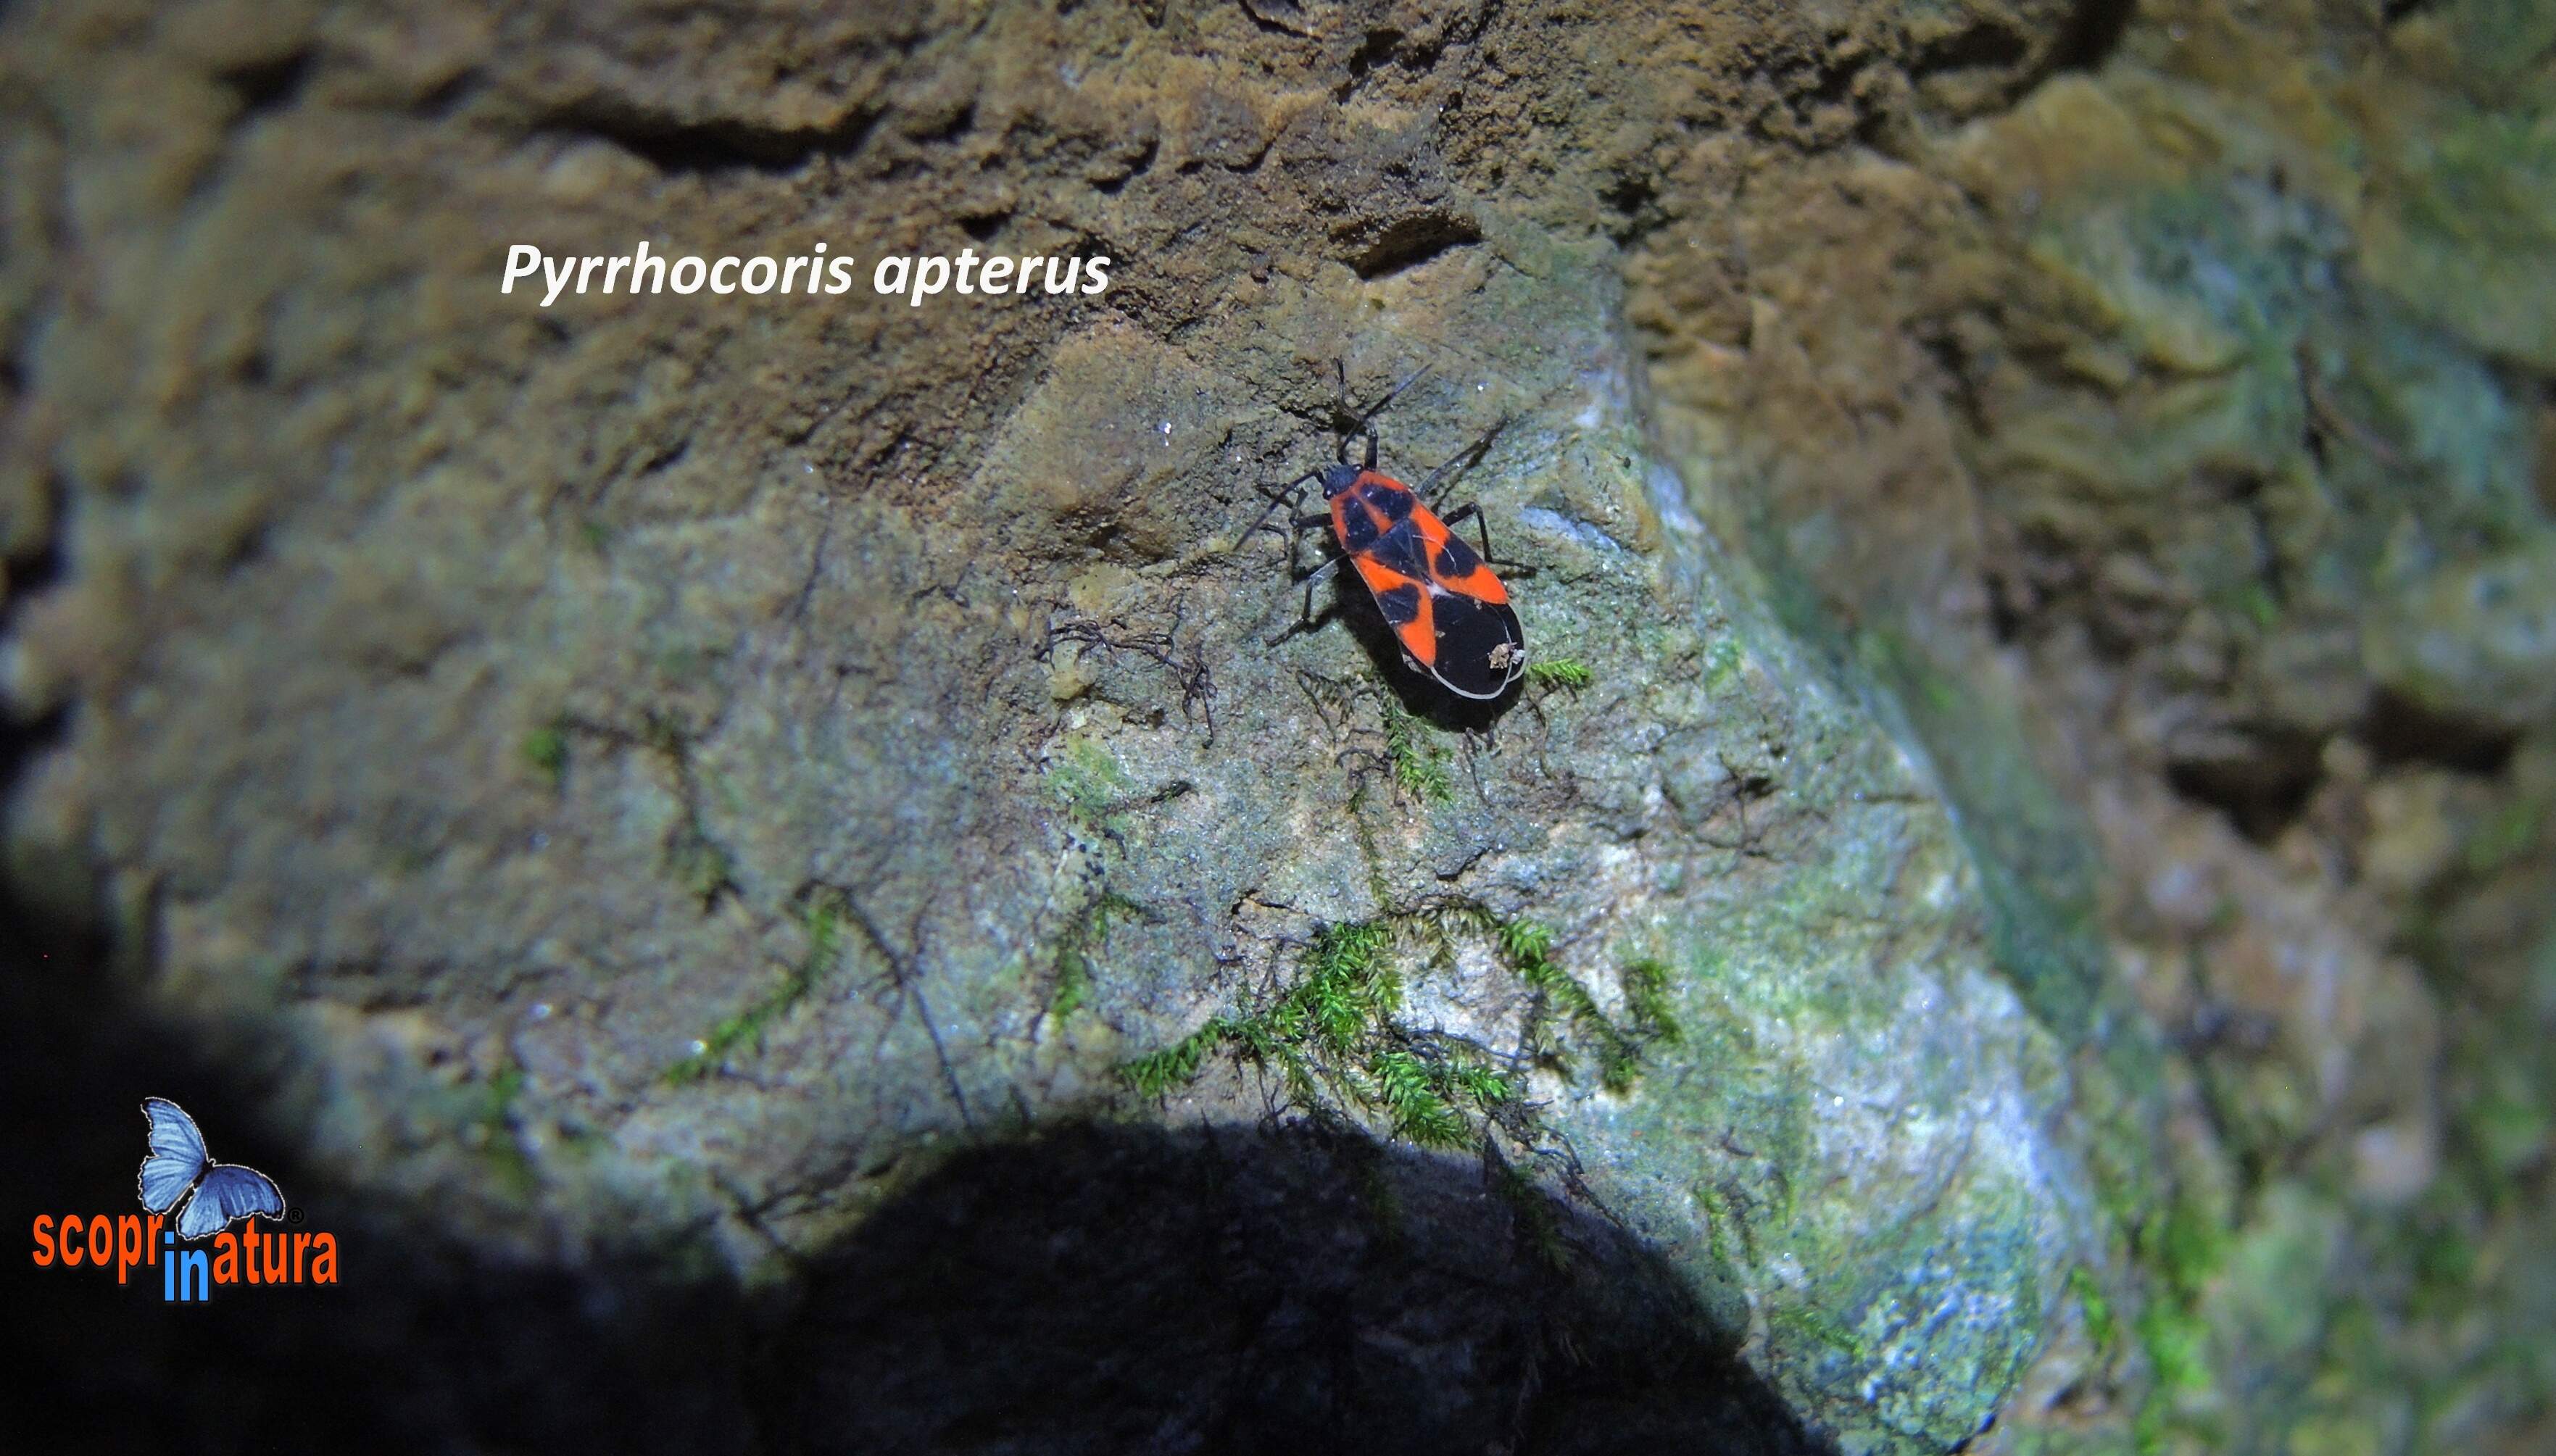 Pyrrhocoris apterus